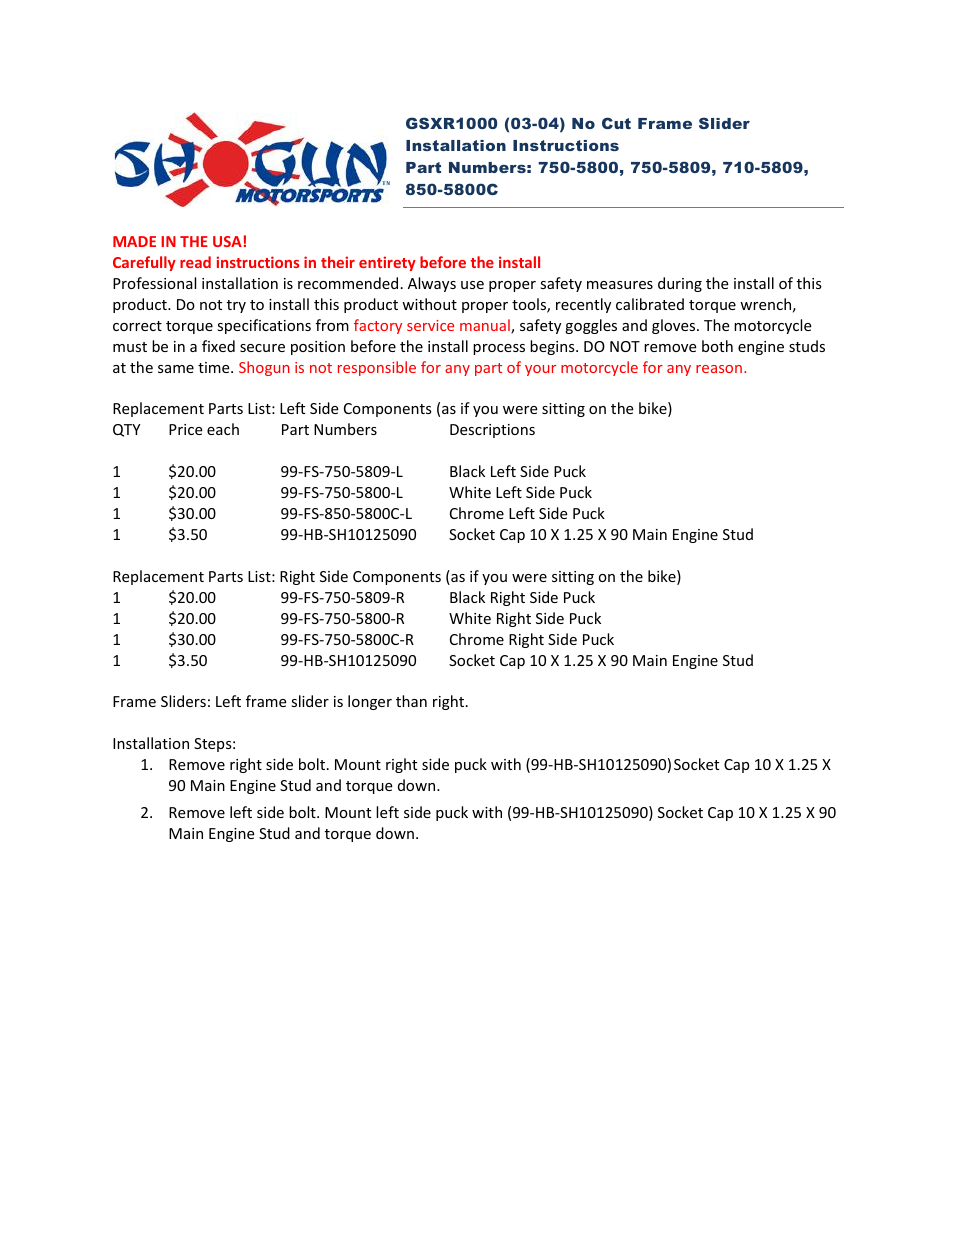 Shogun Motorsports Suzuki GSXR1000 (03-04) No Cut Frame Slider User Manual | 2 pages